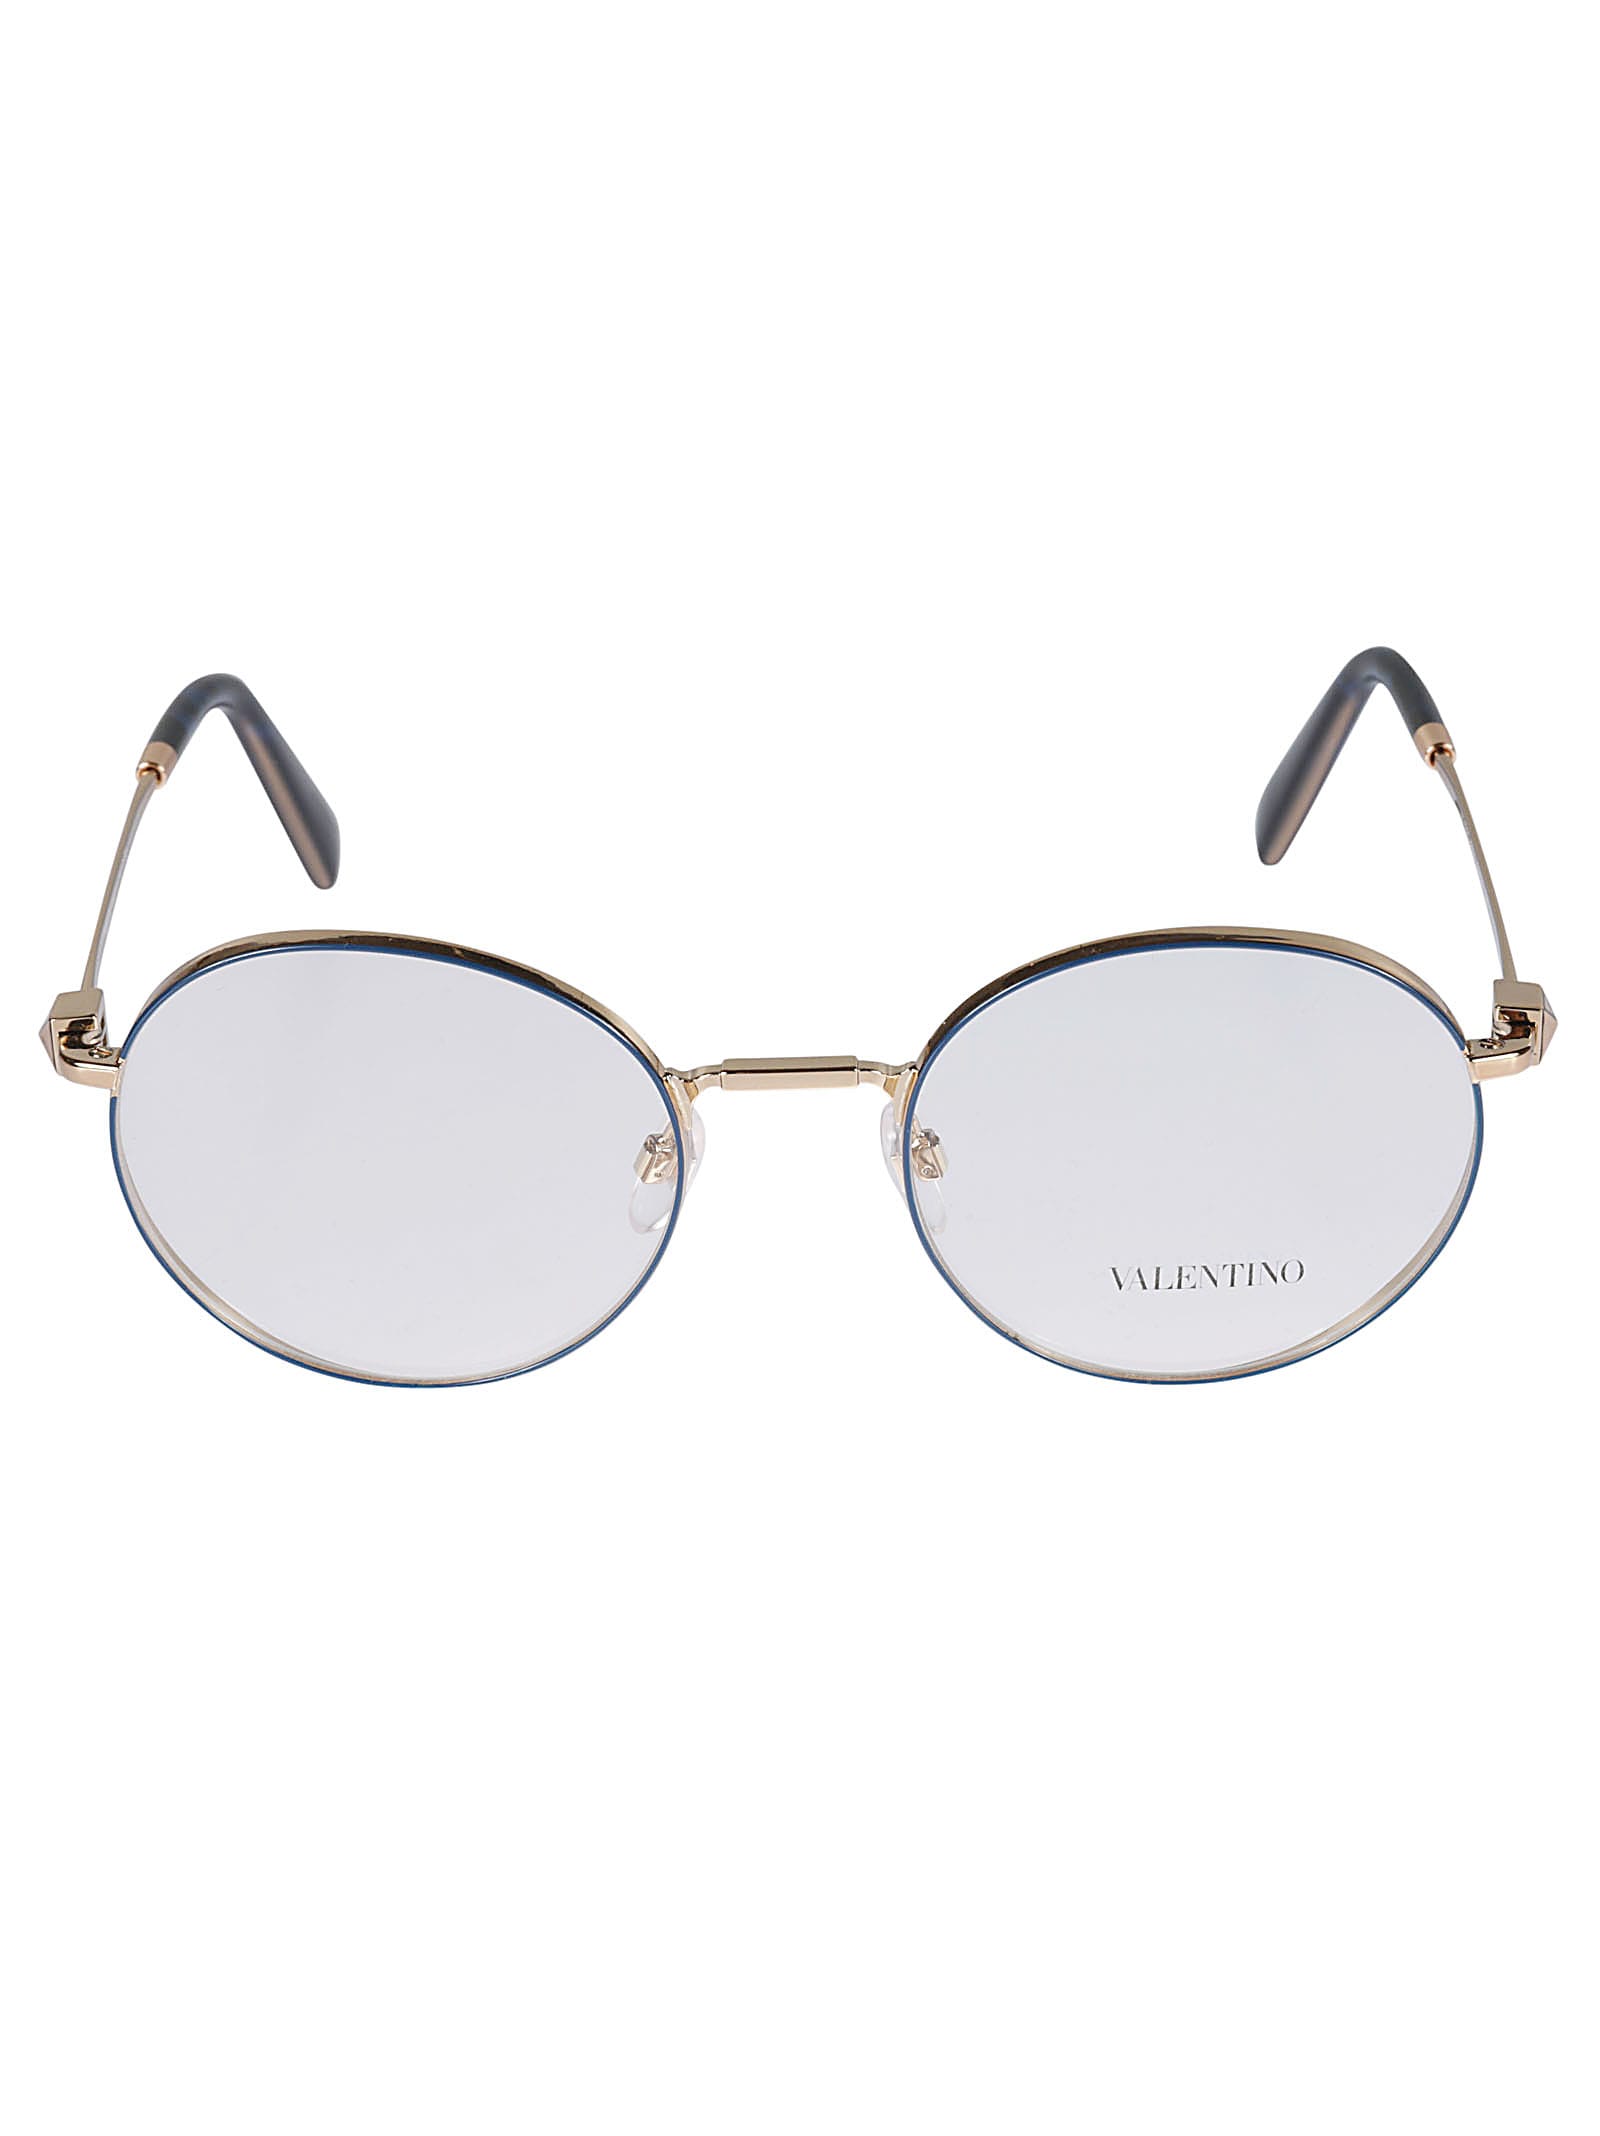 Valentino Vista3031 Glasses